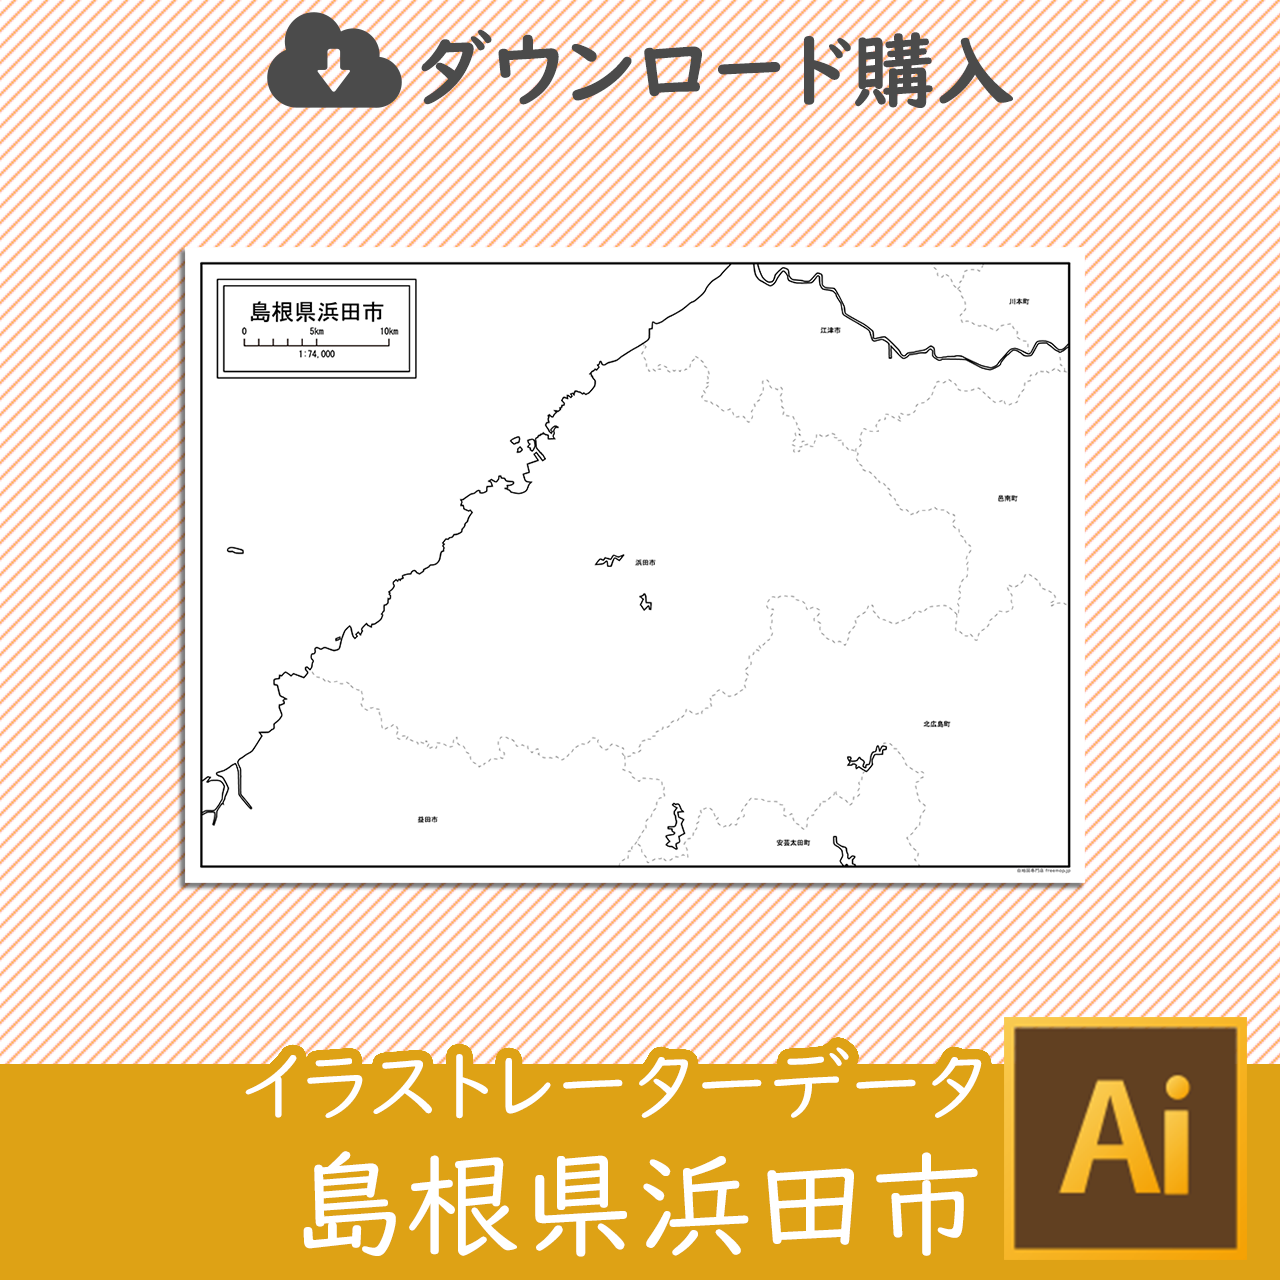 浜田市のaiデータのサムネイル画像